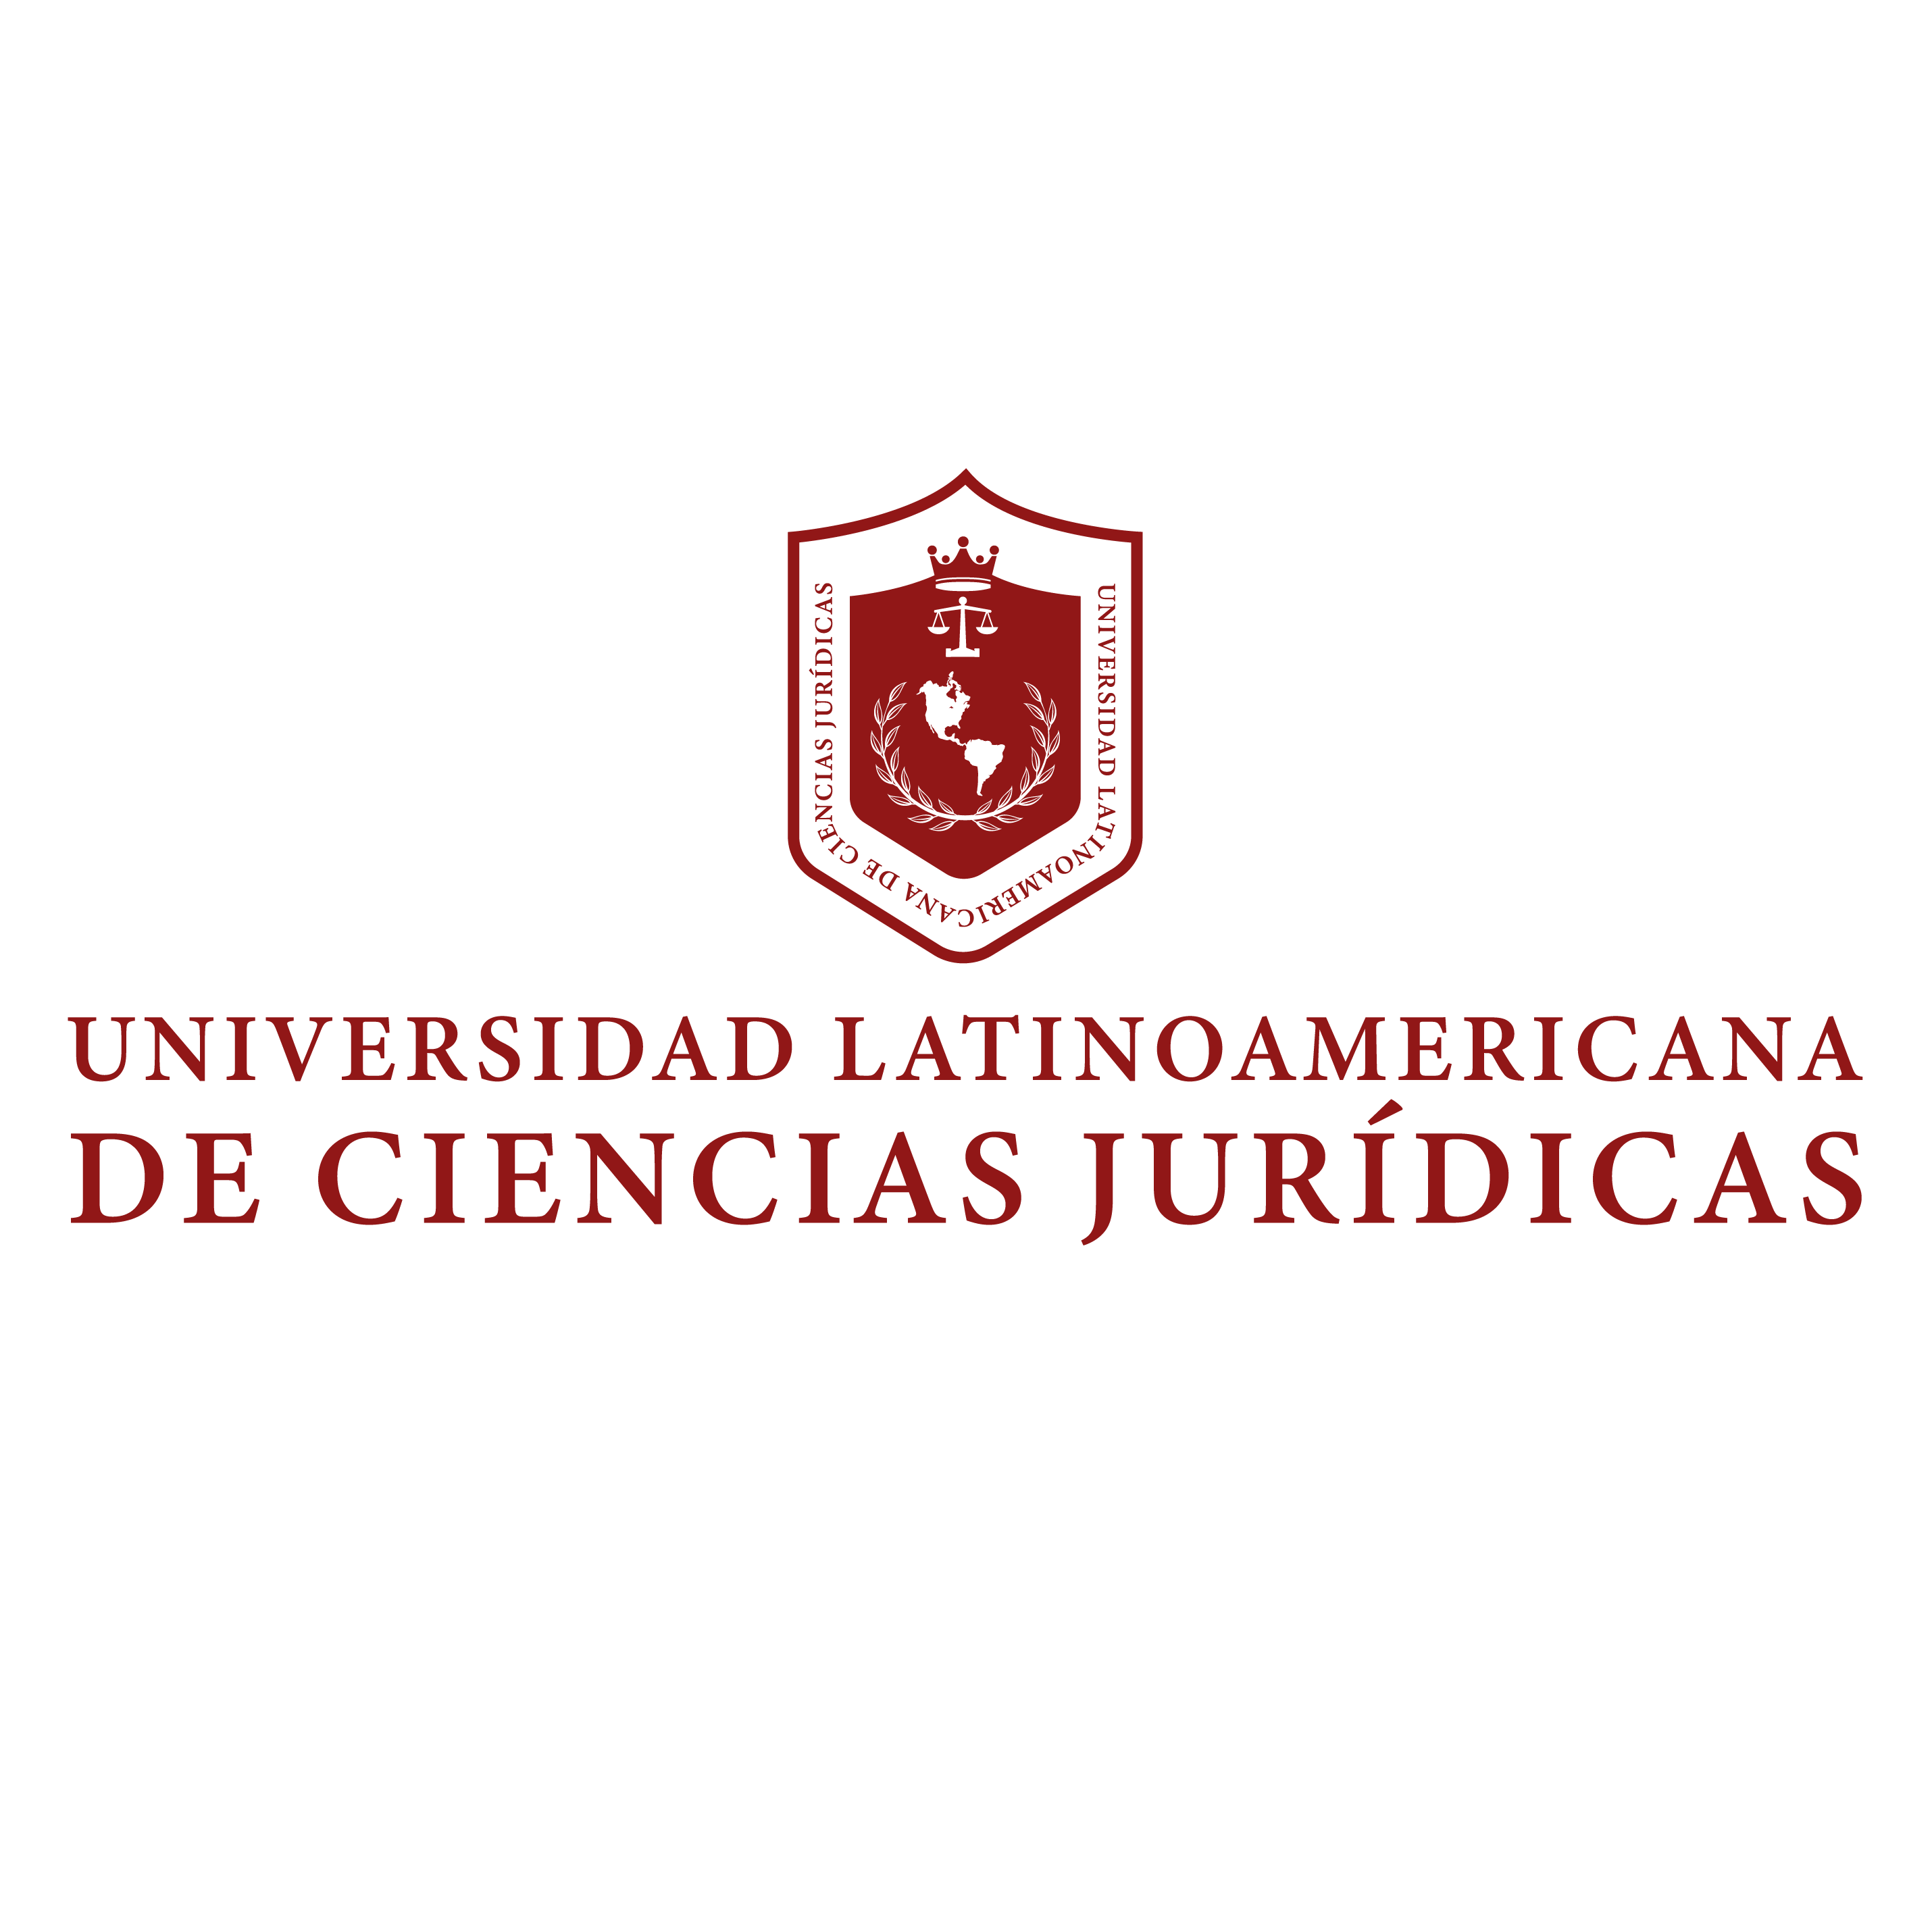 Universidad Latinoamericana de Ciencias Jurídicas